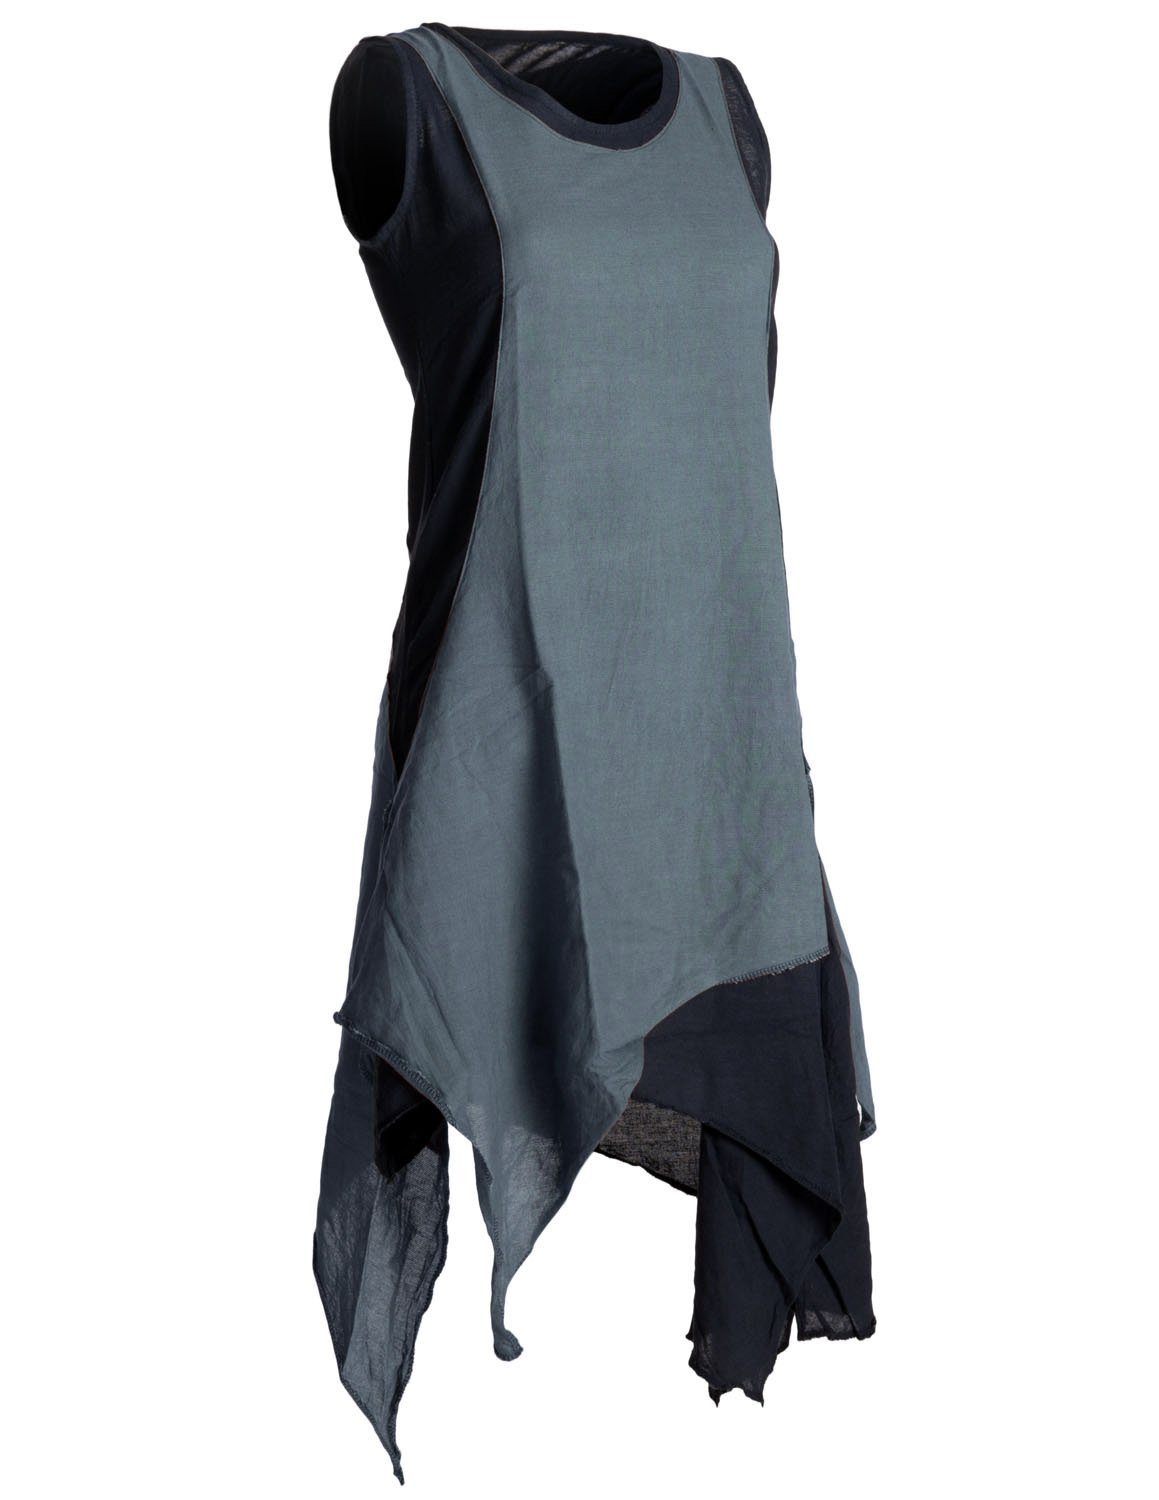 Sommerkleid Vishes Hippie handgewebte Style Goa, Kleid Boho, Ärmelloses schwarz-grau Baumwolle Lagenlook